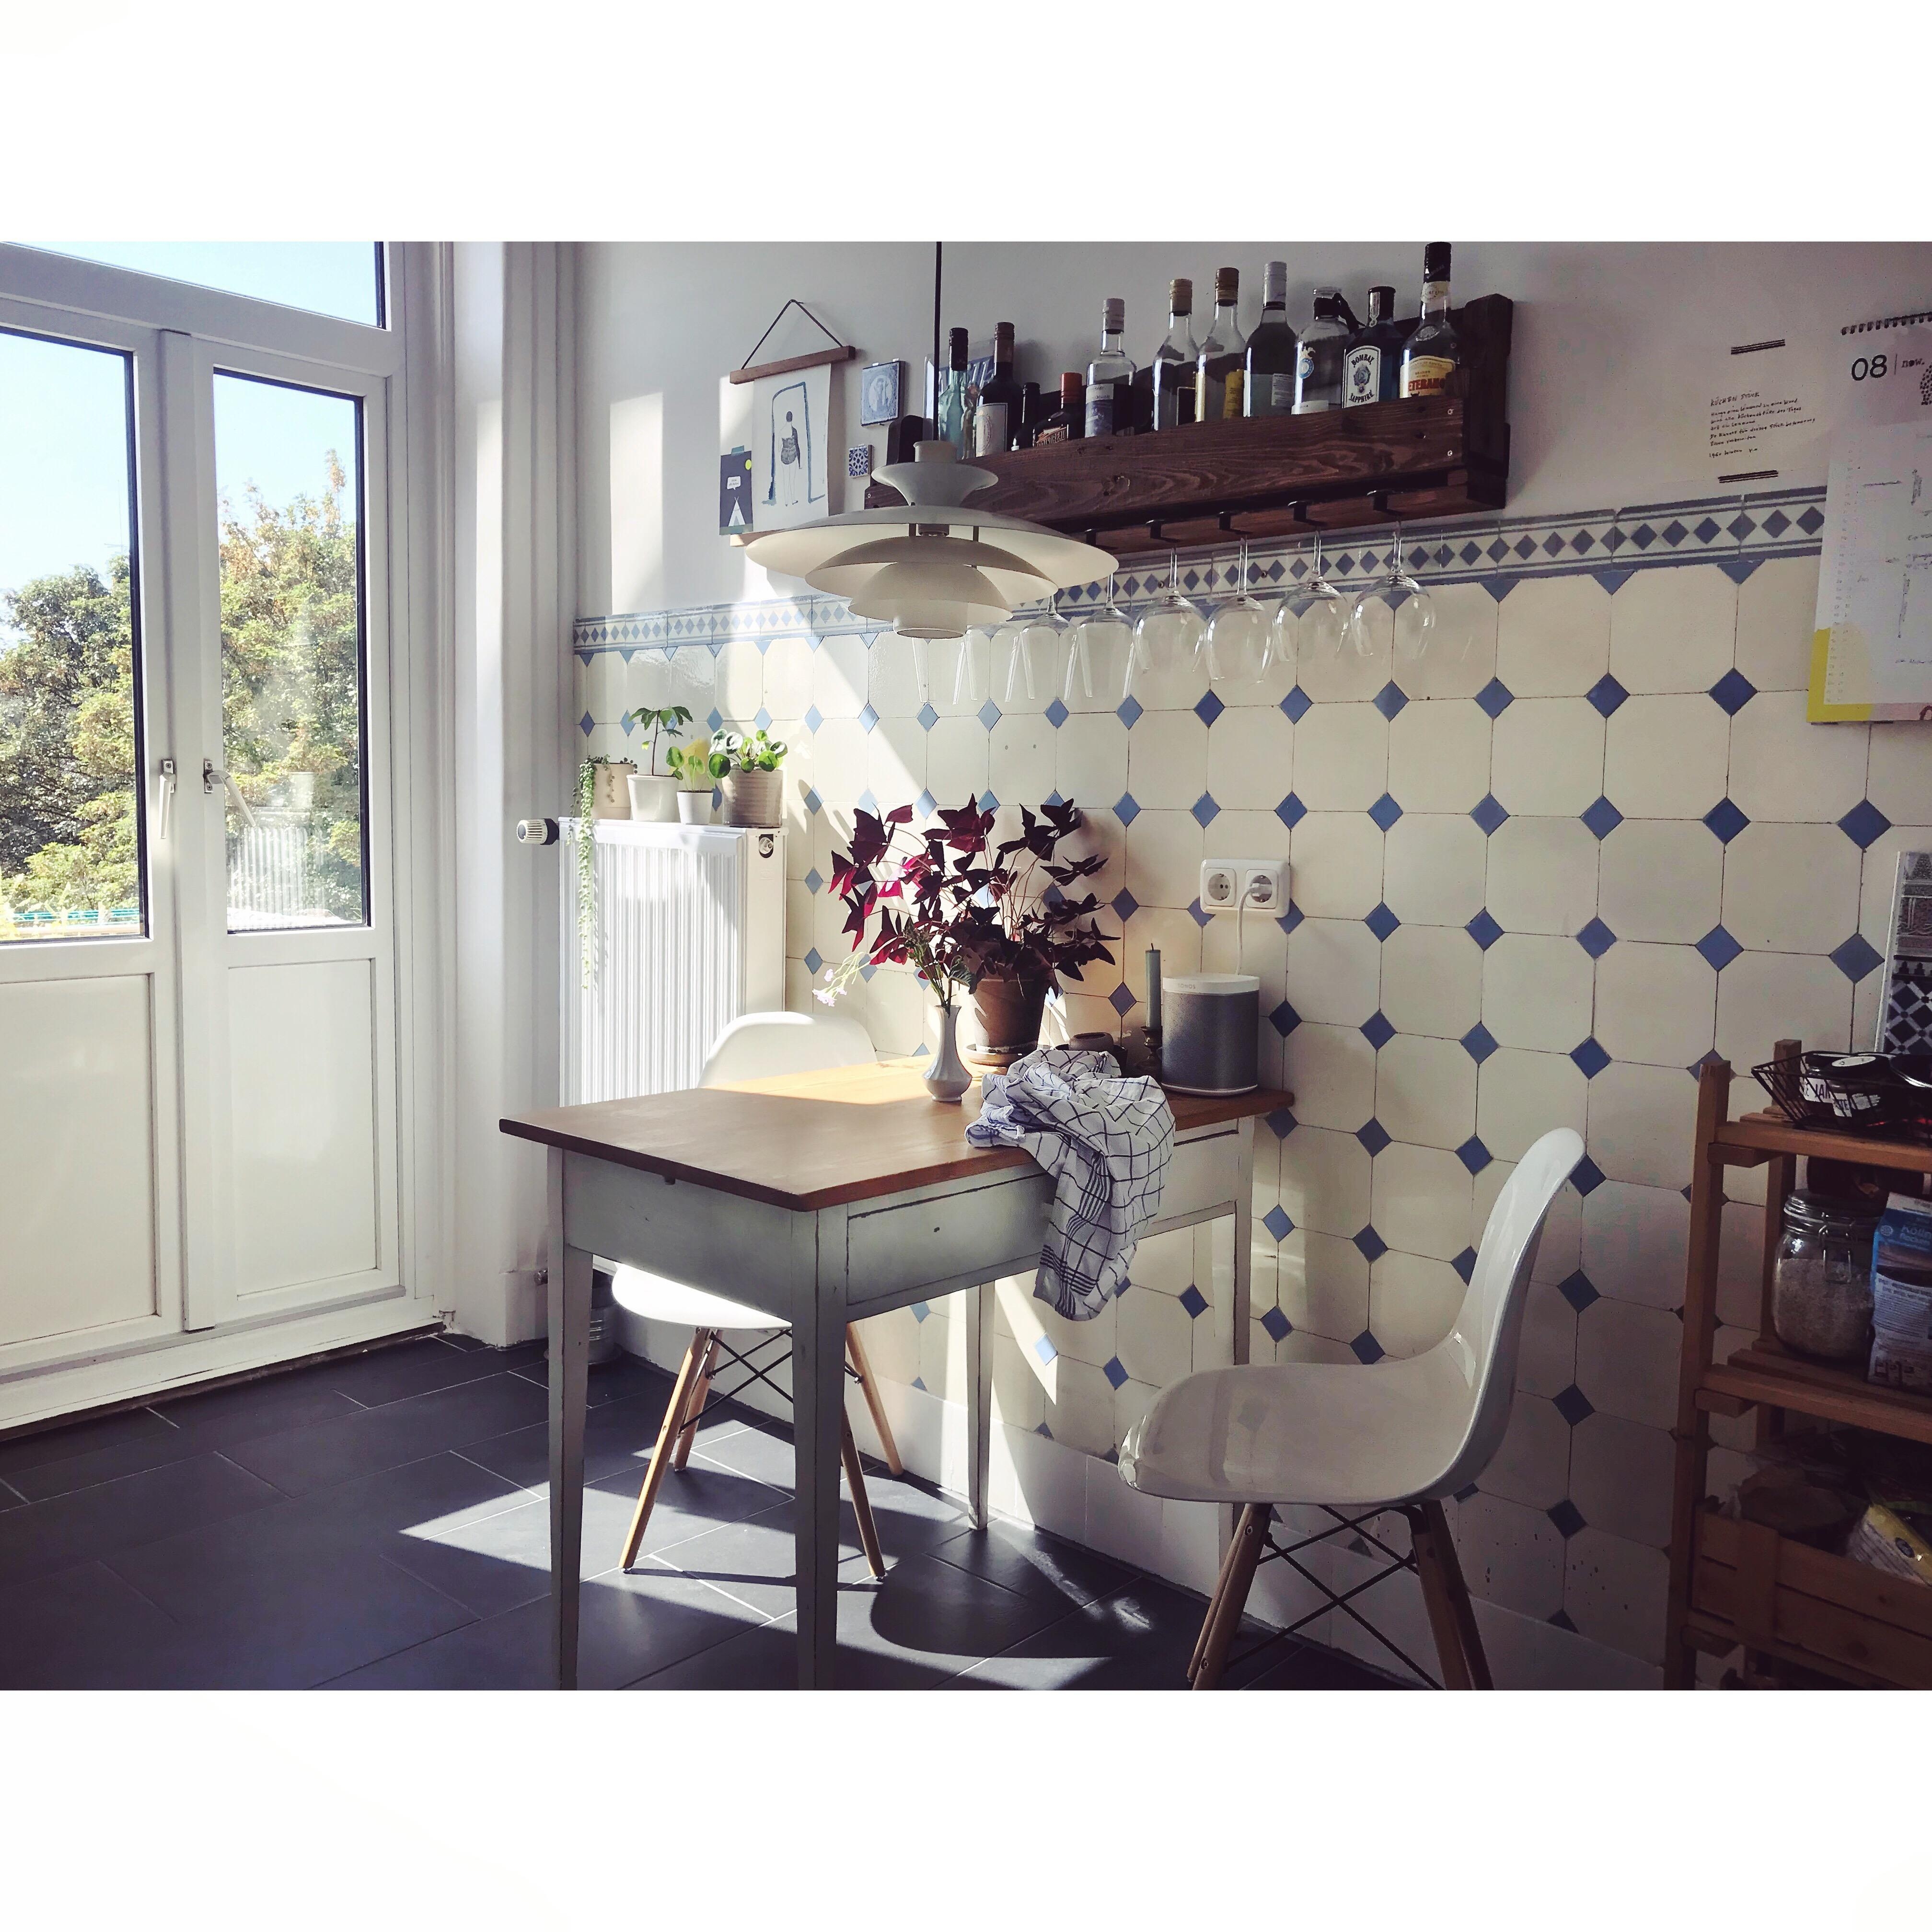 Als noch Sommer war in unserer #Küche - #fliesenliebe #altbau #vintage #geliebteszuhause